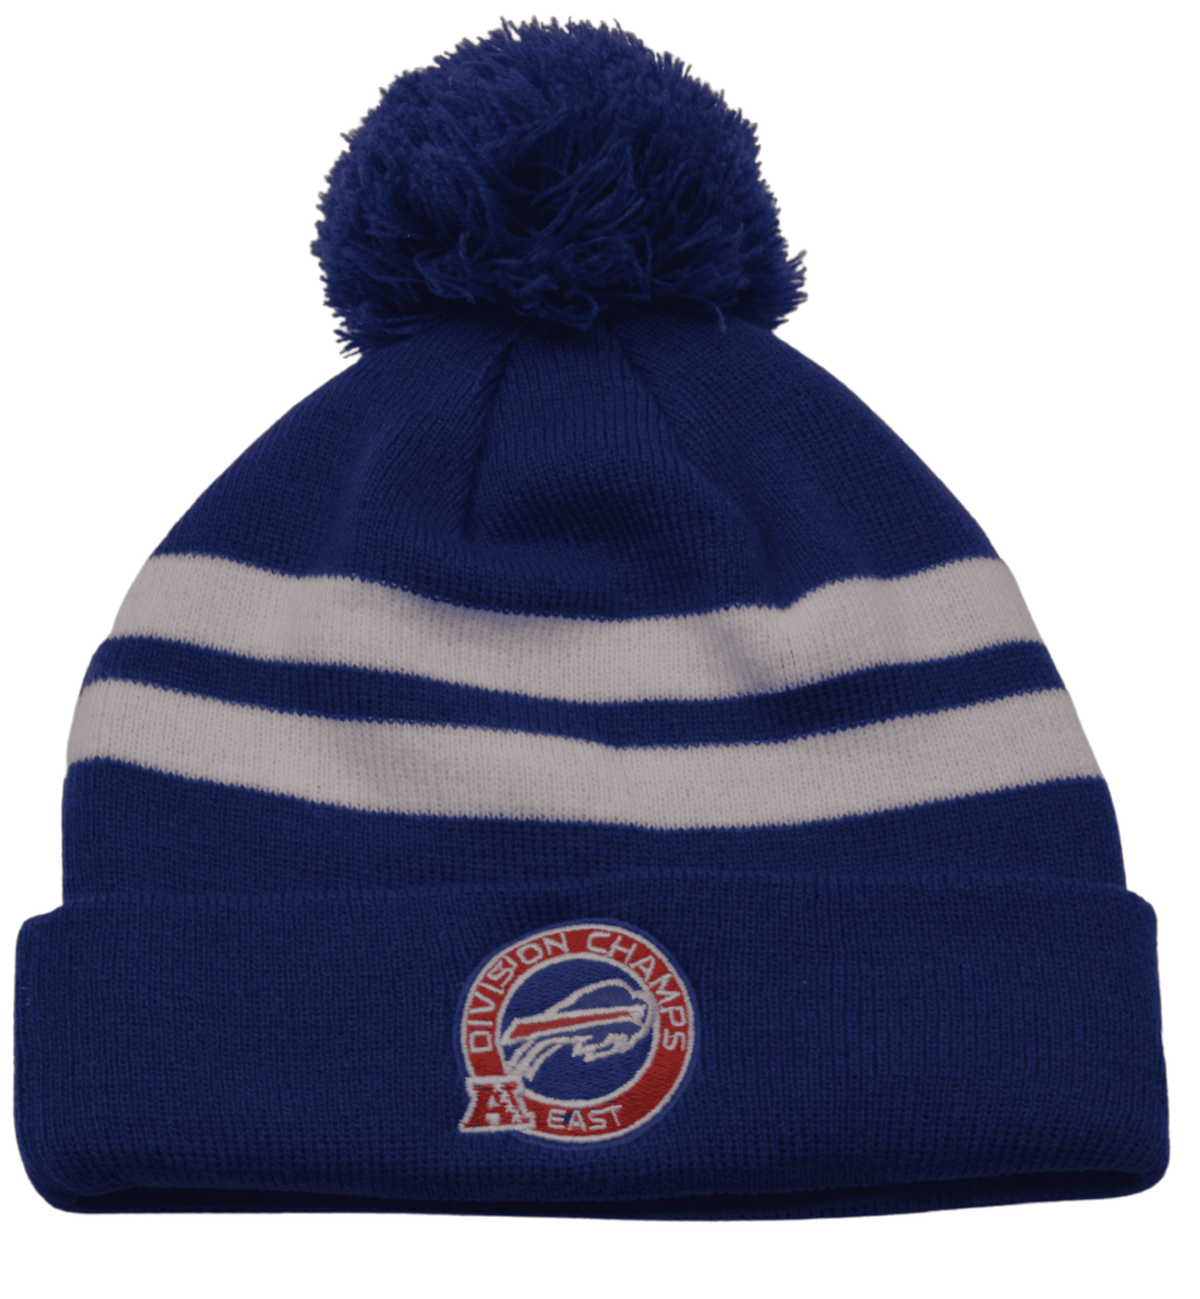 Buffalo Bills New Era NFC Champs NFL Team Knit Beanie Pom Pom Winter Hat  